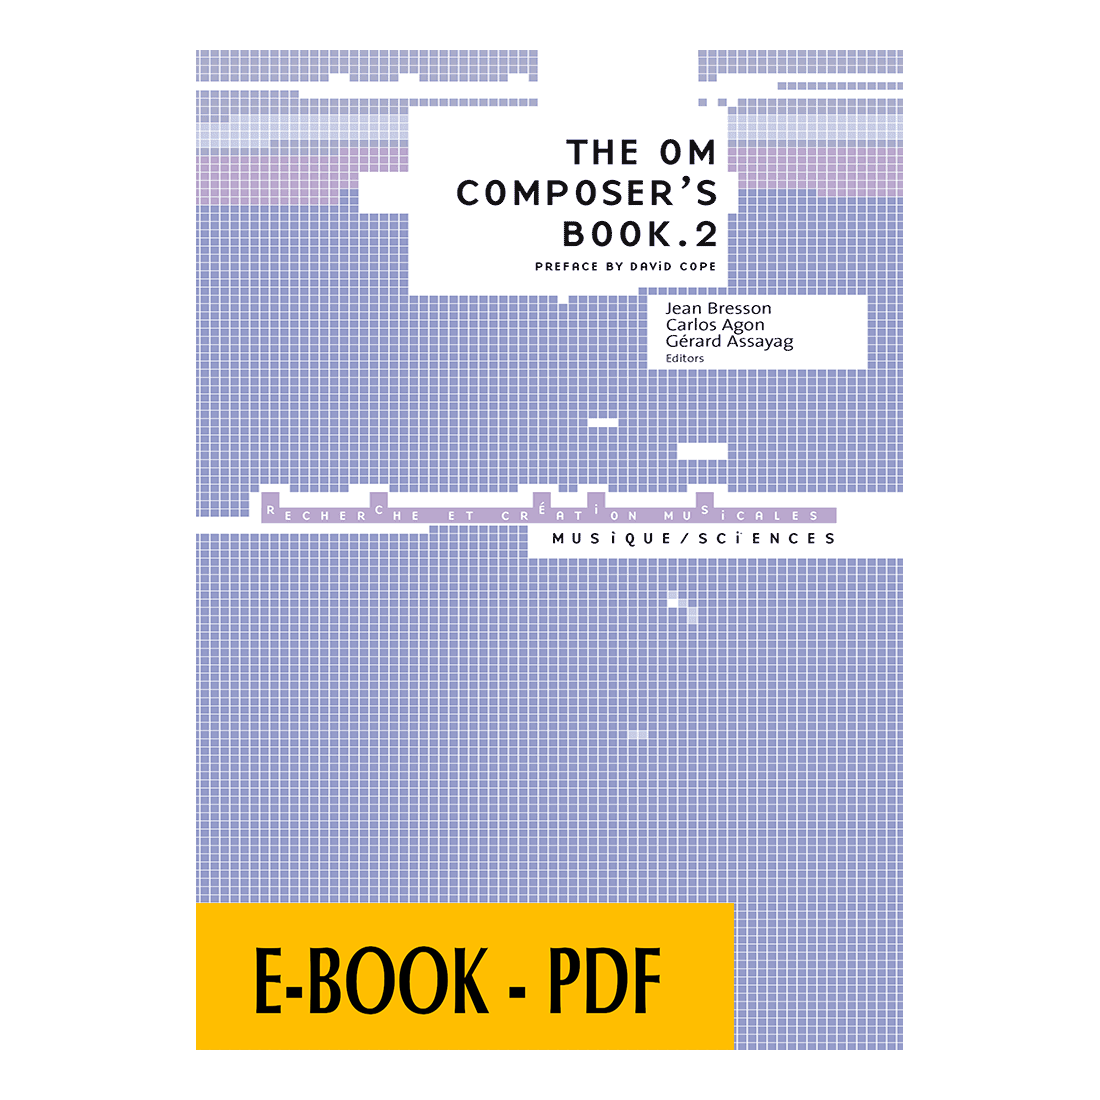 The OM Composer's book 2 - E-book PDF